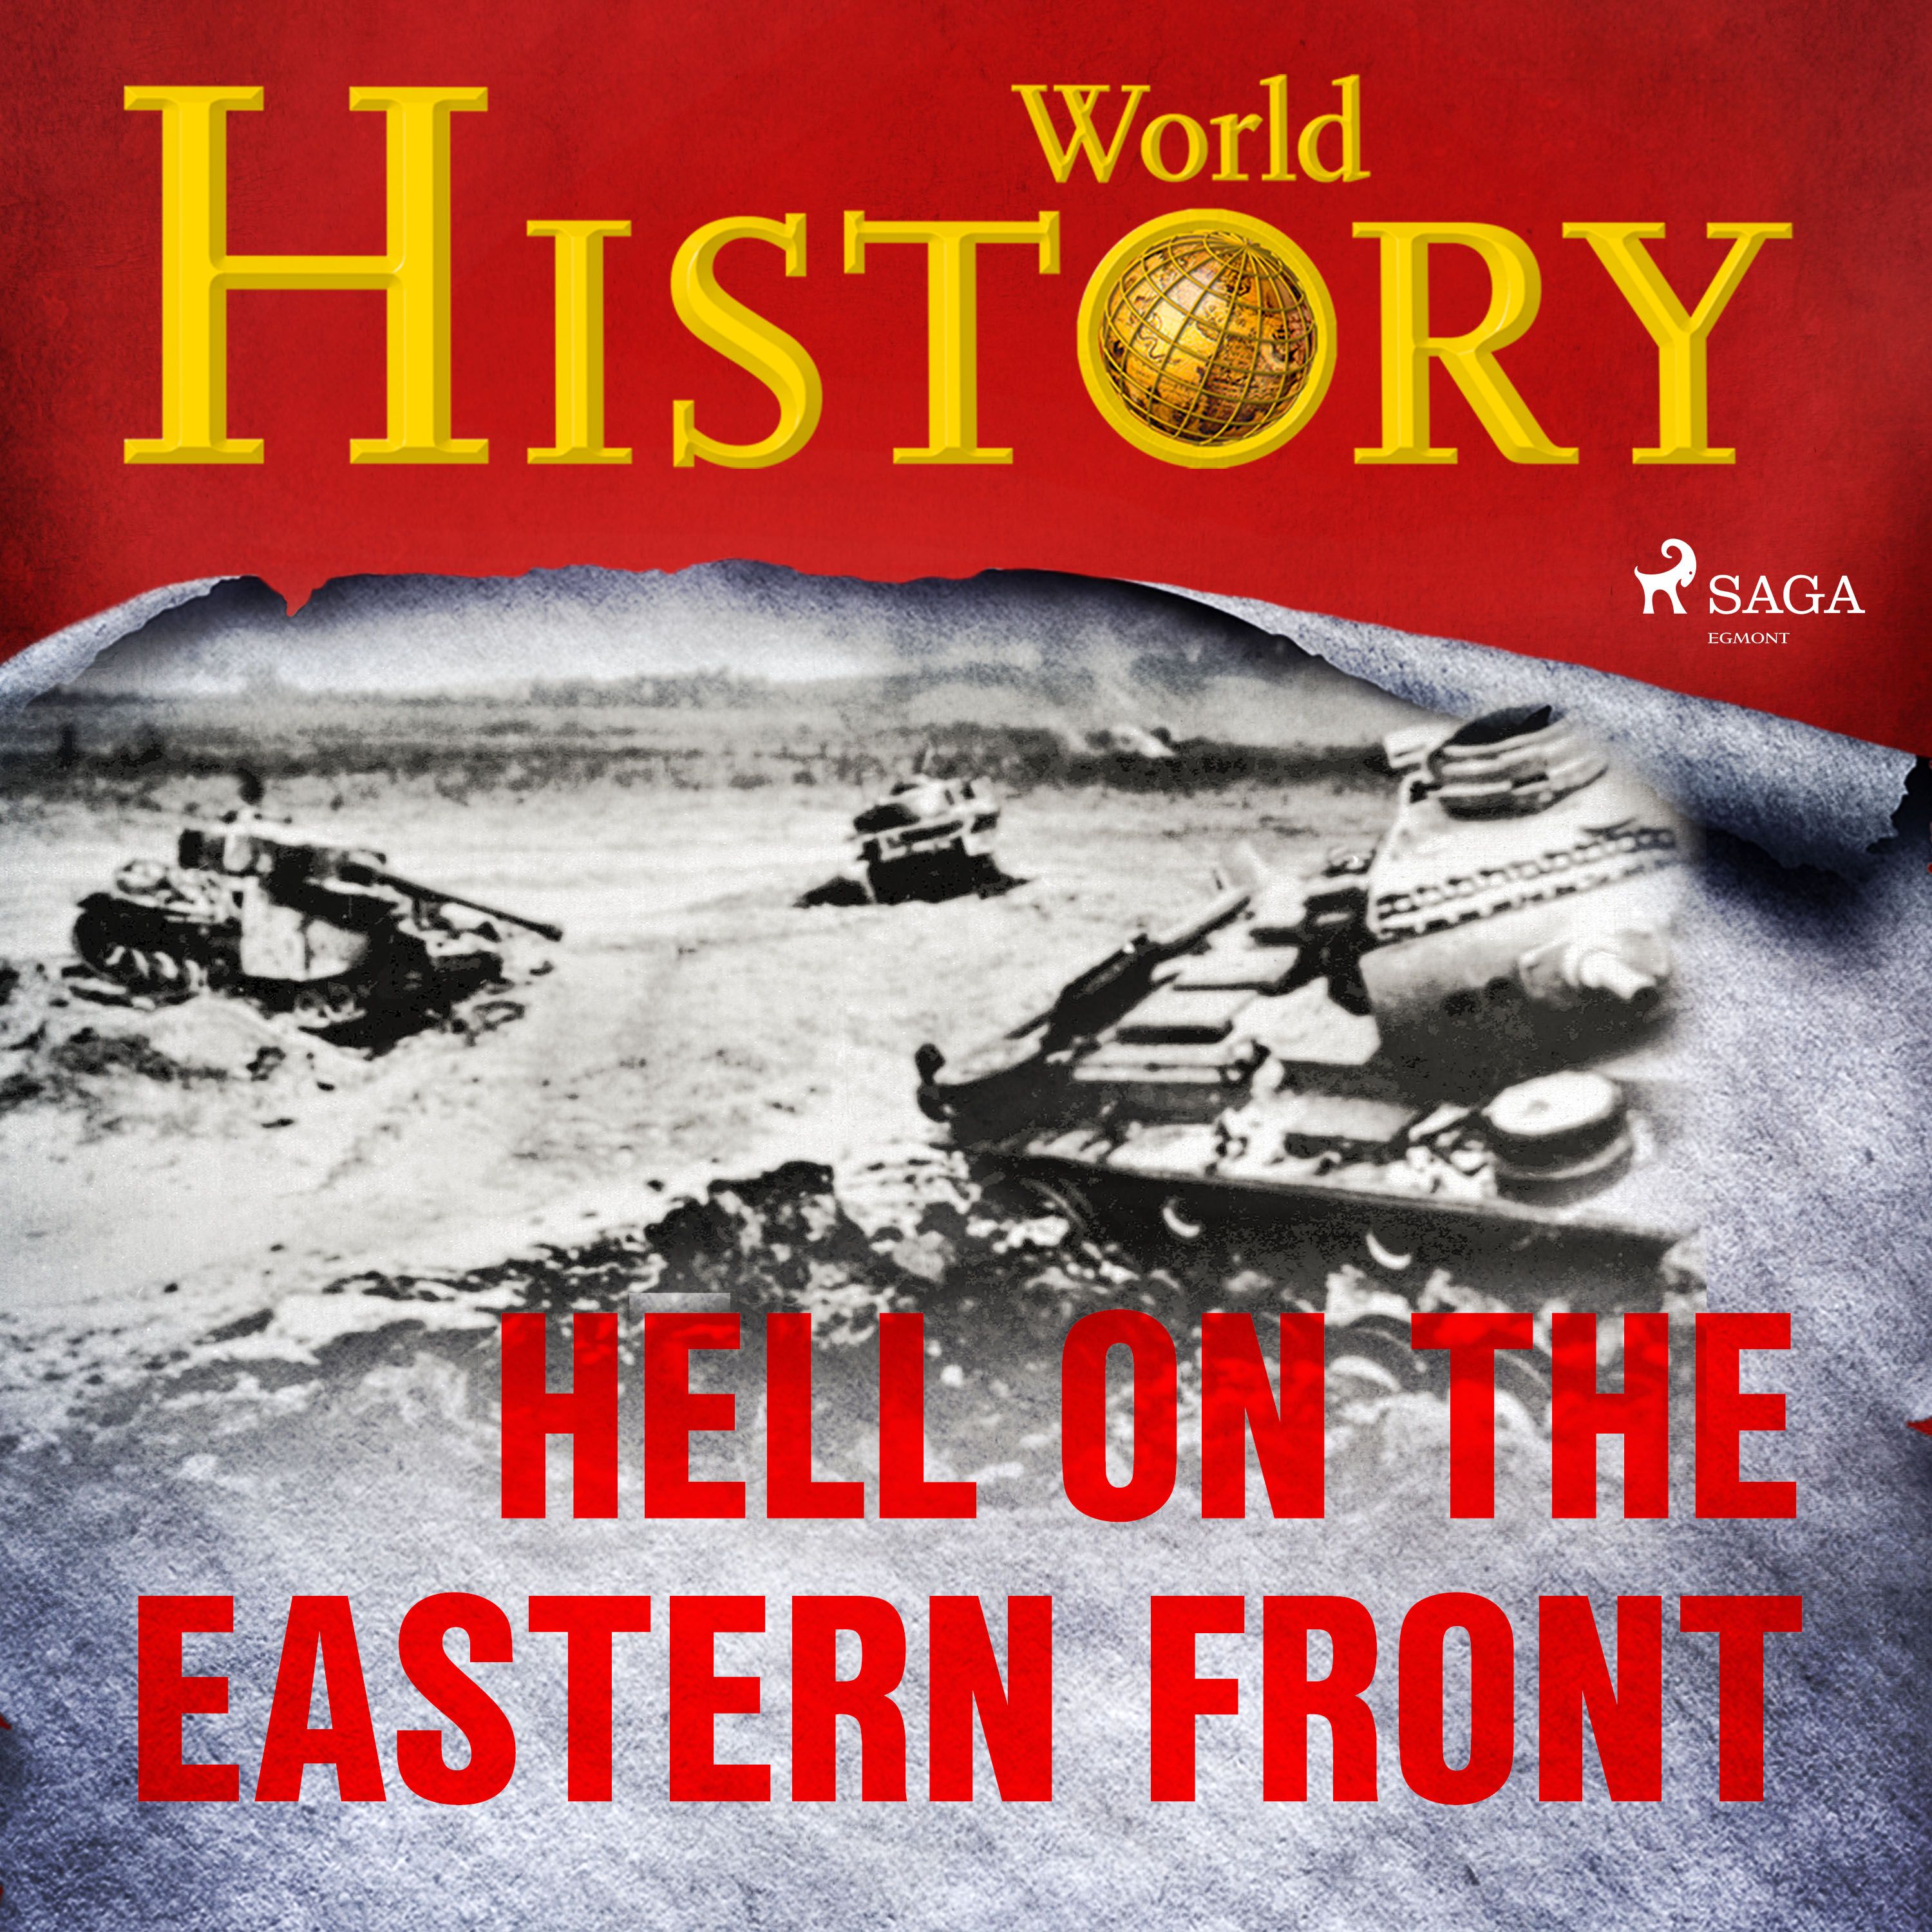 Hell on the Eastern Front, ljudbok av World History